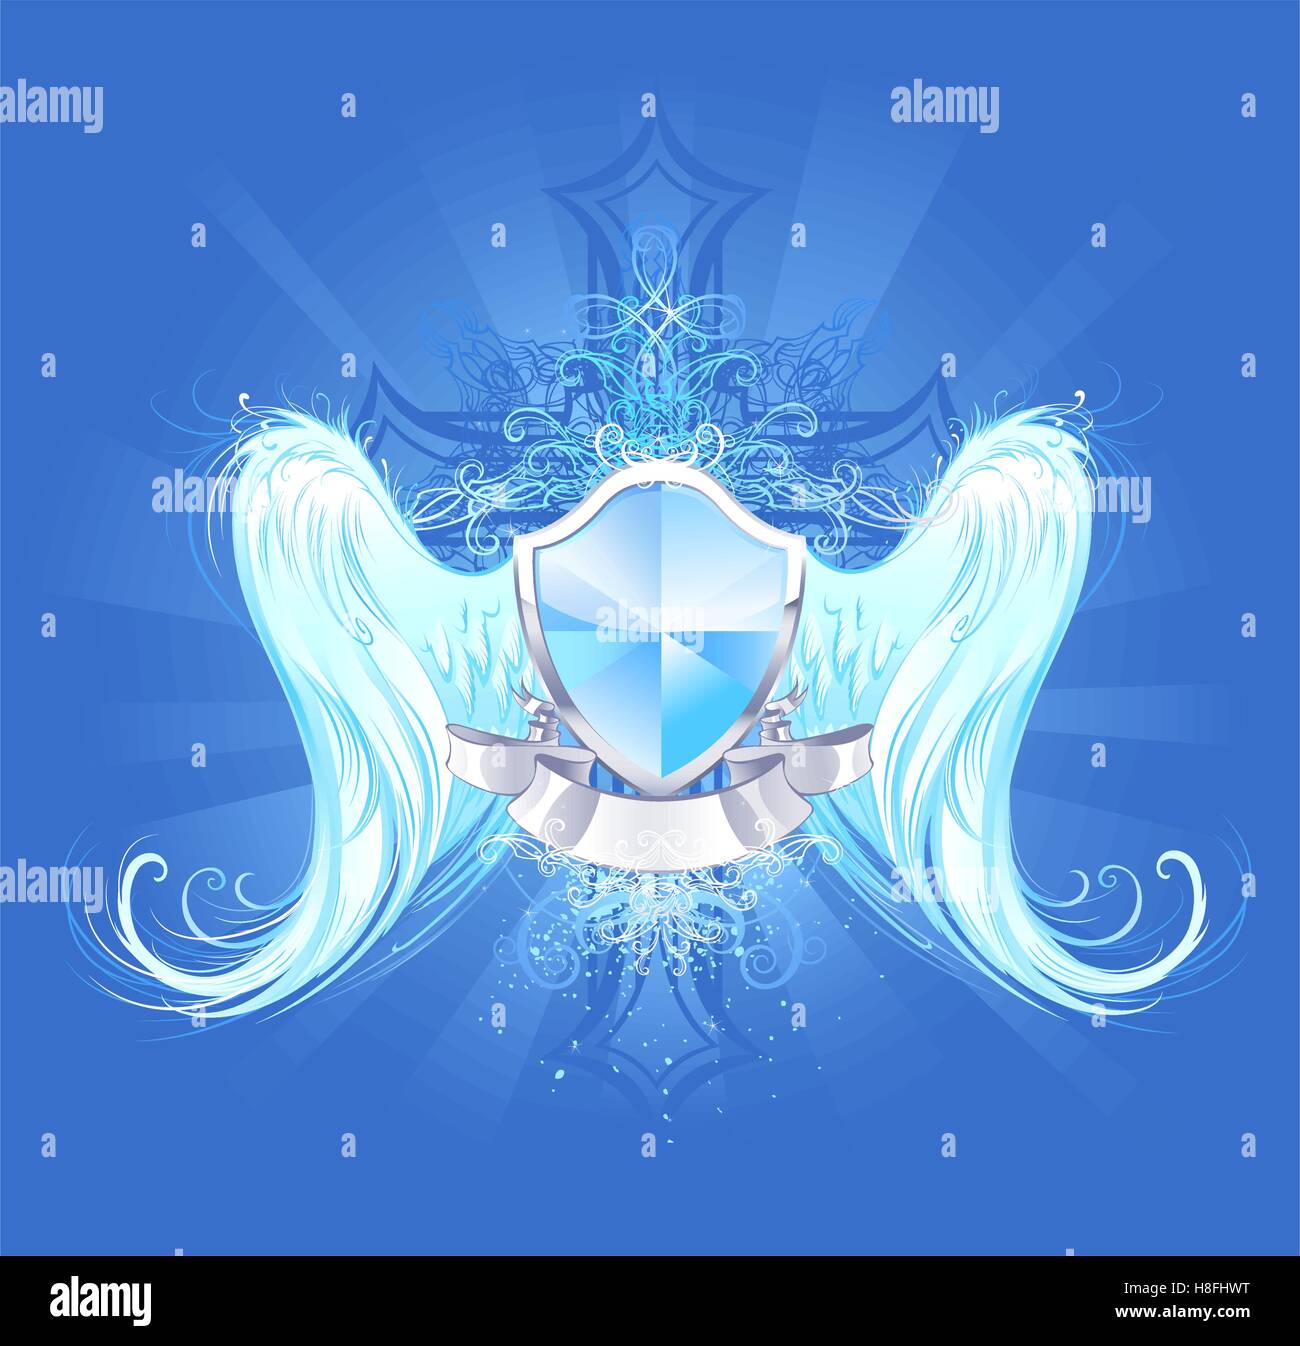 Bouclier bleu cristal avec ailes d'ange blanc artistiquement peints dans l'arrière-plan lumineux bleu, décoré d'une croix Illustration de Vecteur